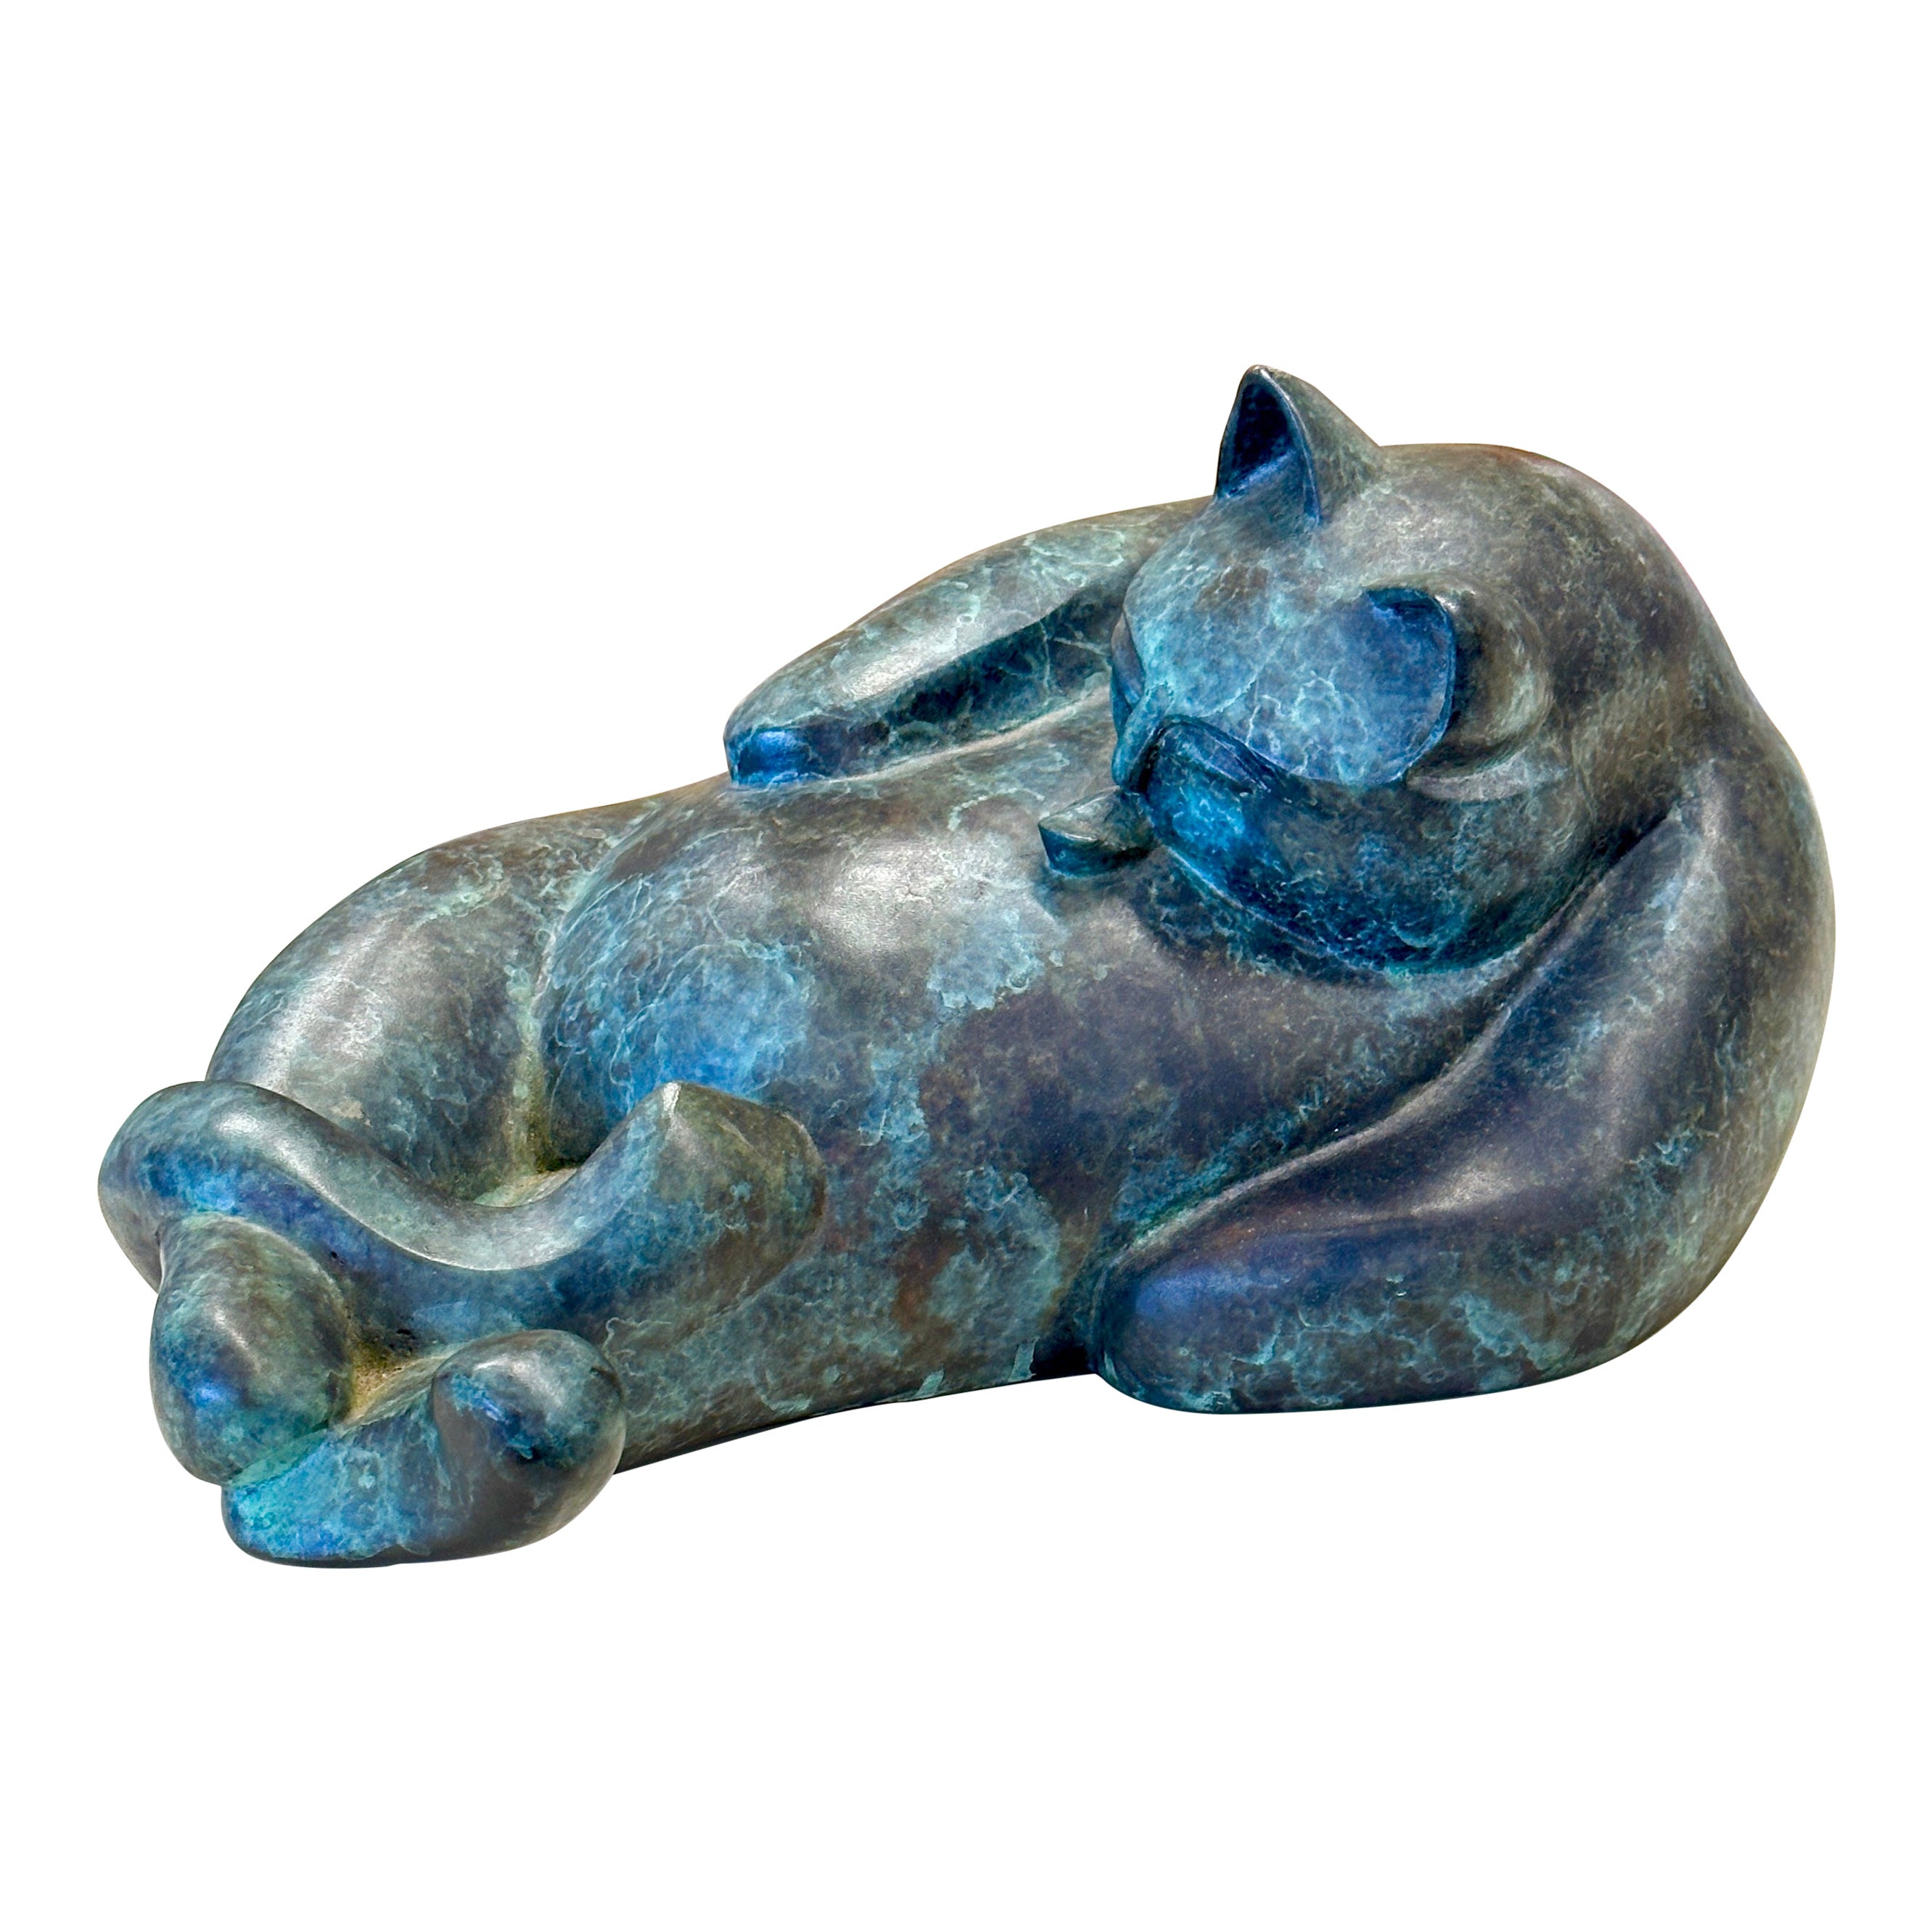 Barbara Beretich Tanko, Bronzeskulptur einer Katze, Skulptur 1996